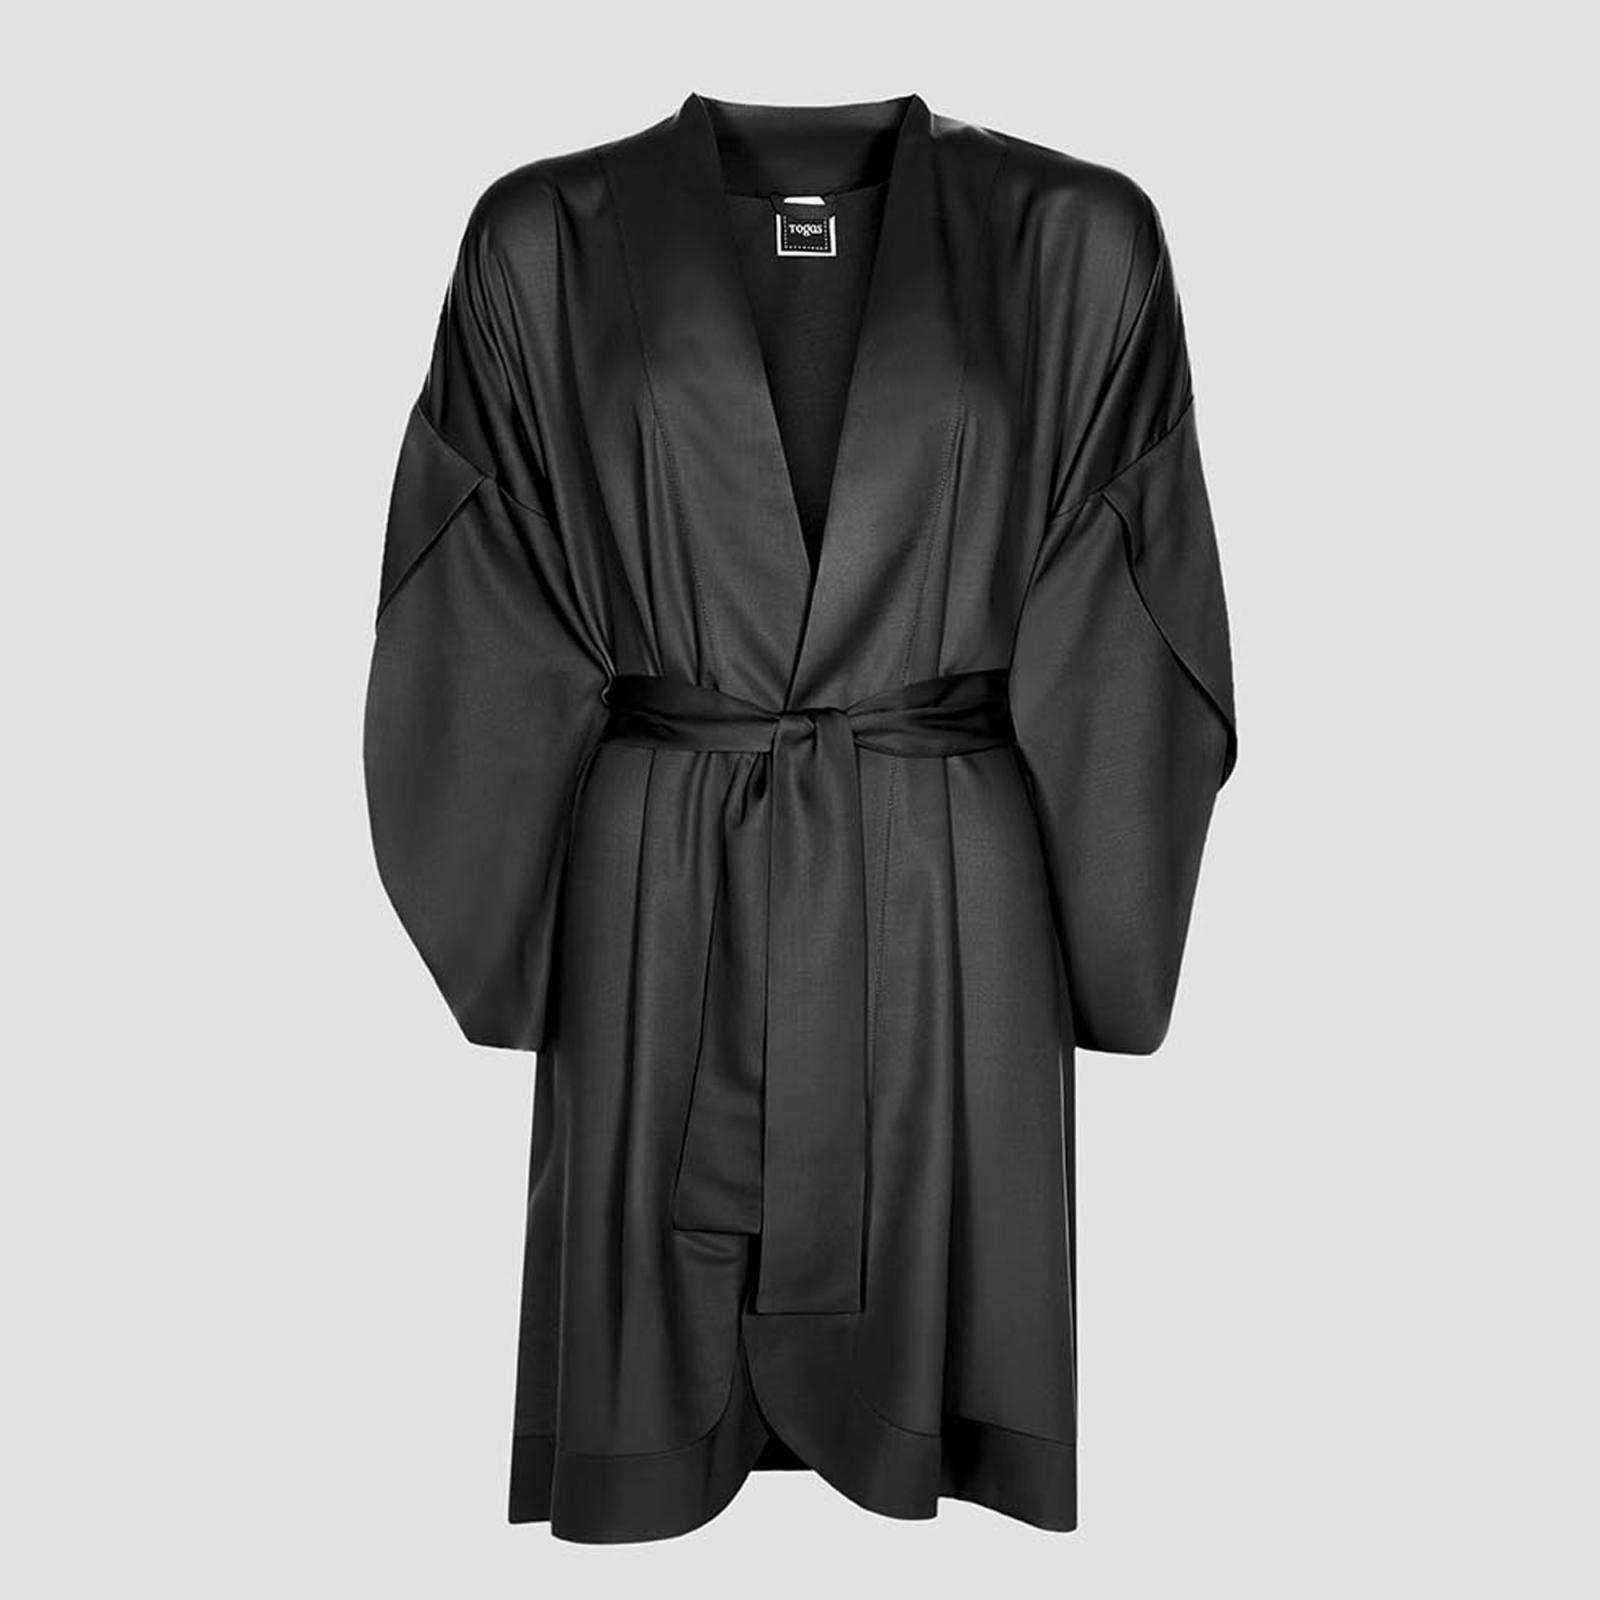 Халат-кимоно короткое Togas Наоми чёрное S (44) платье кимоно